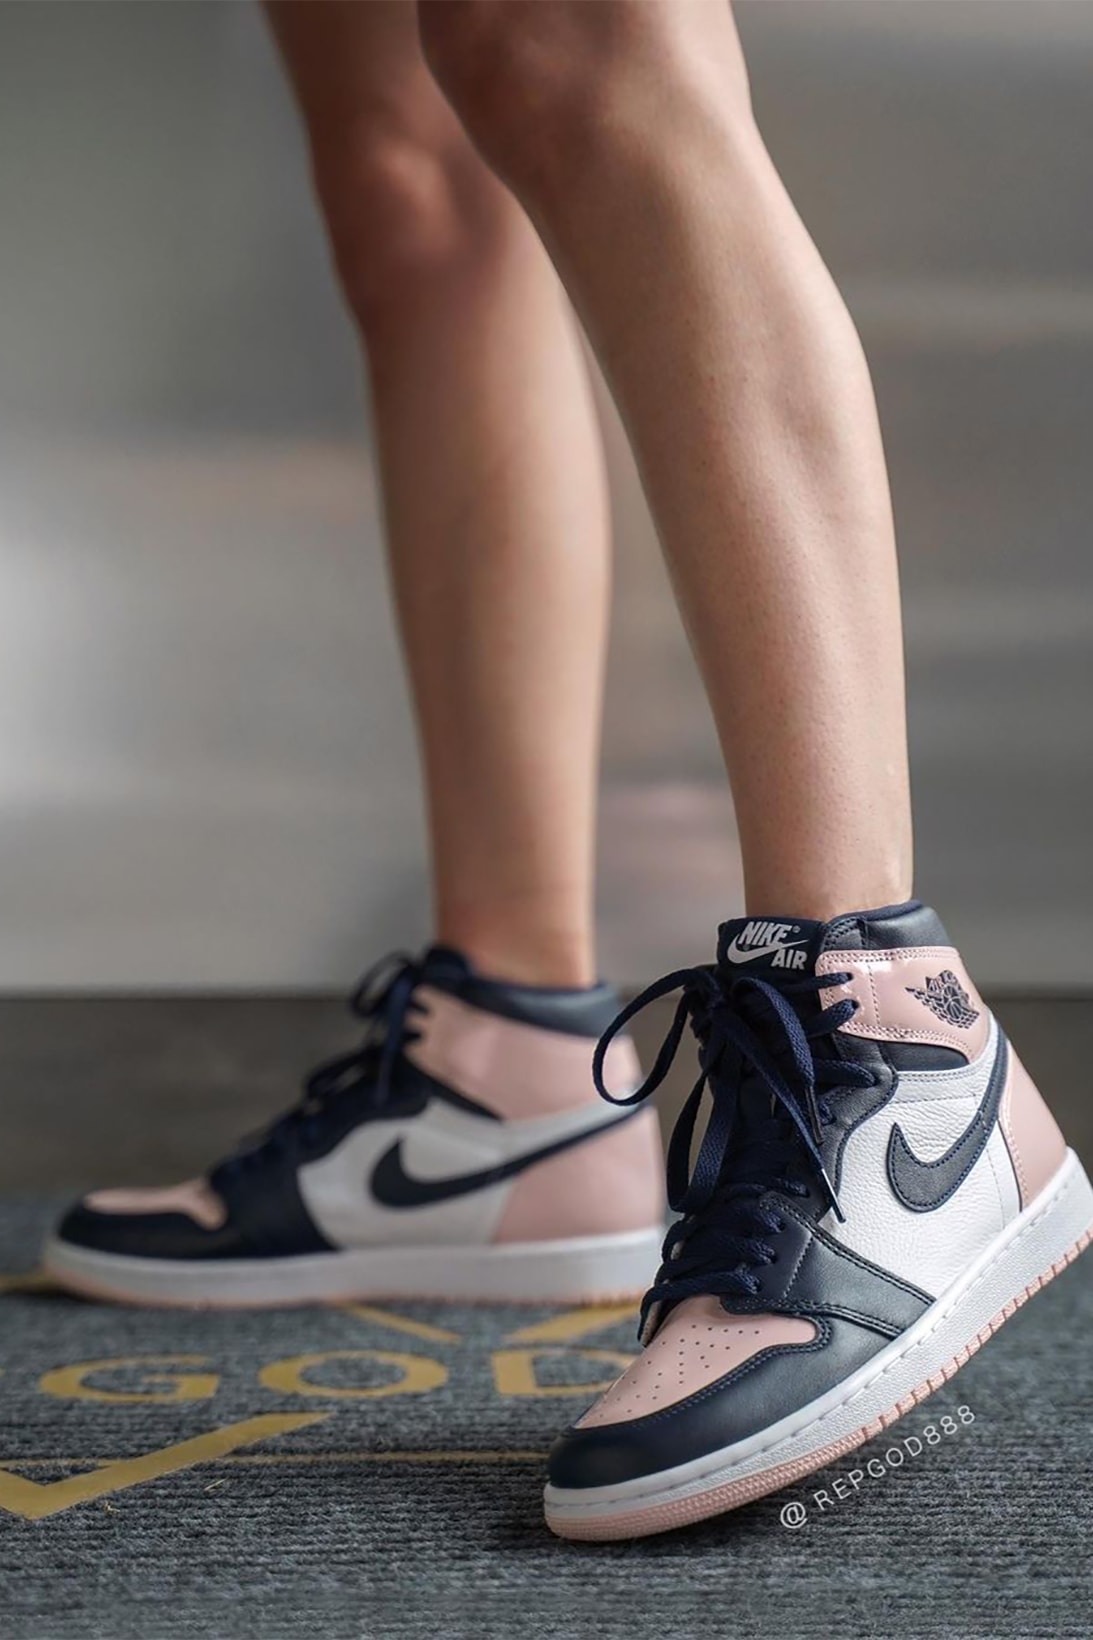 Nike Air Jordan 1 High Atmosphere Womens Exclusive Sneakers Pink Black White On Foot Look Shoes Kicks Footwear